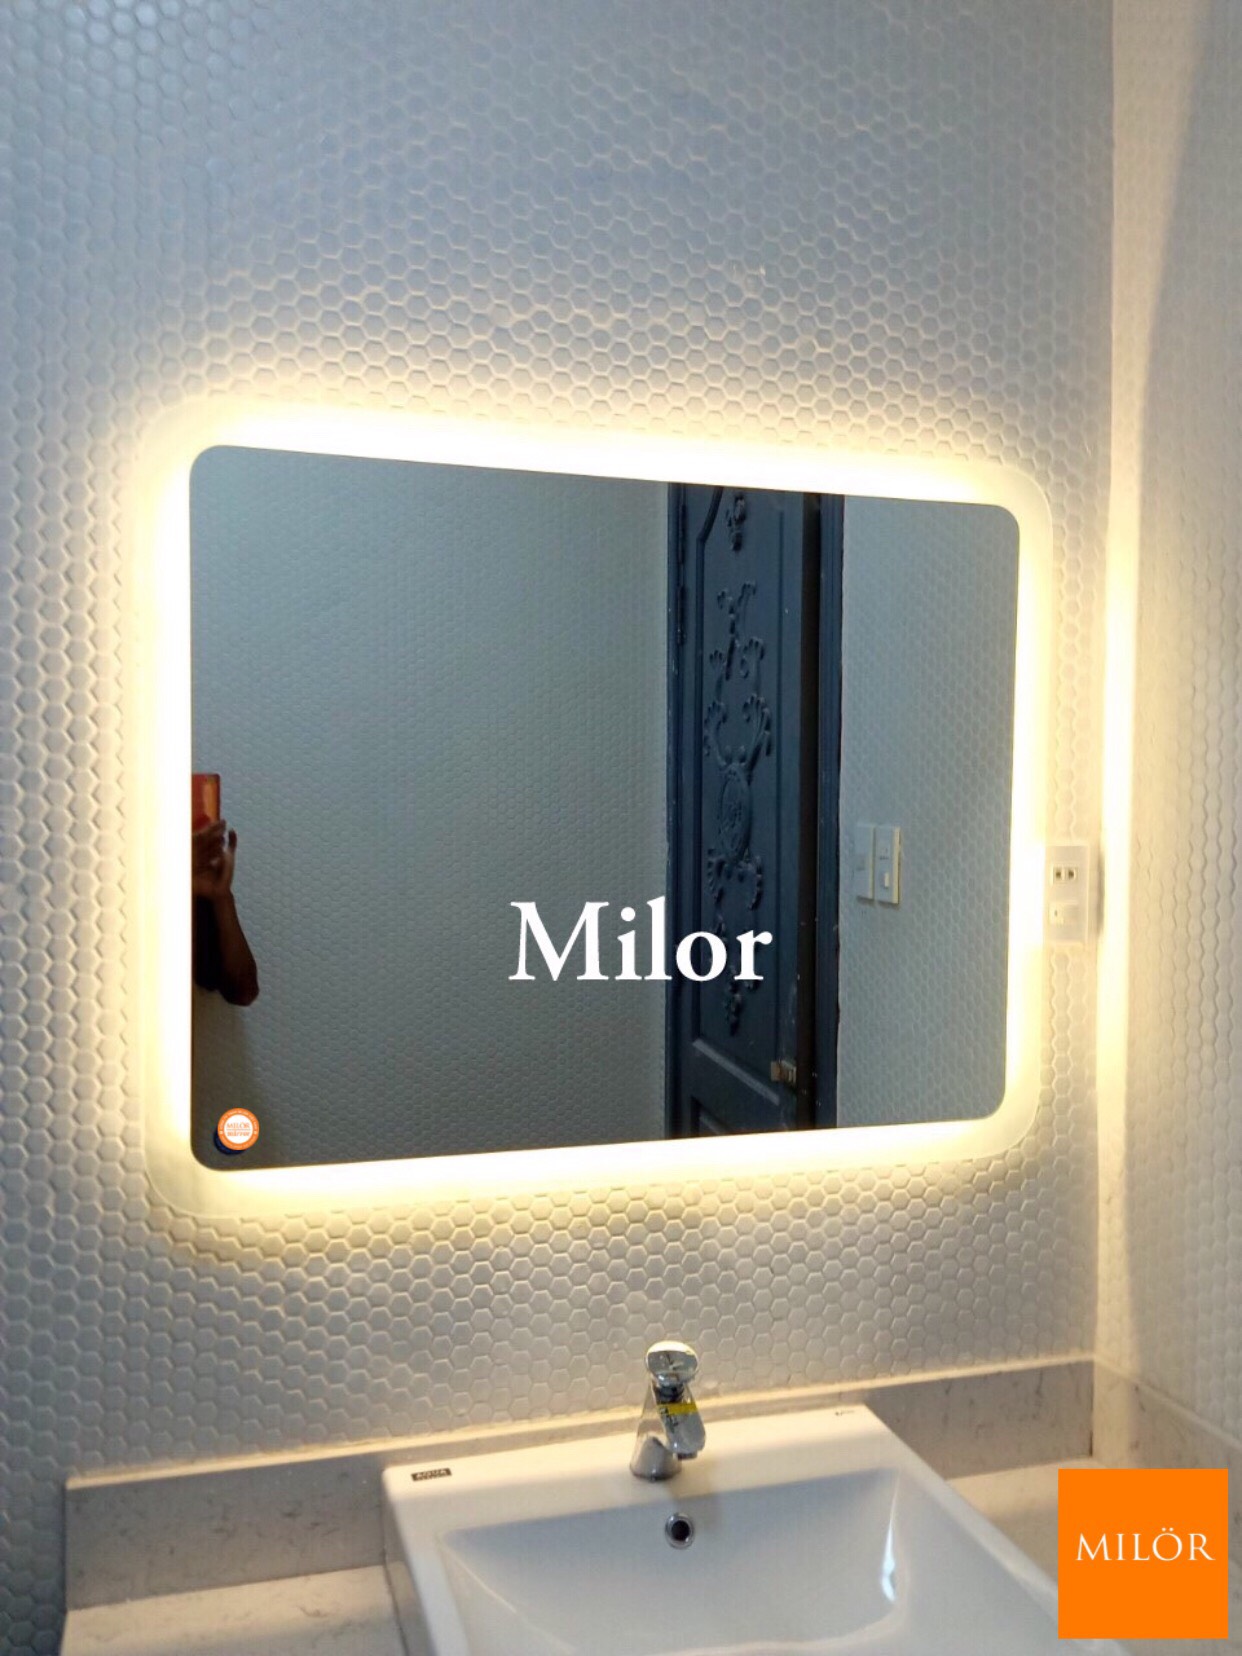 Gương nhà tắm chữ nhật đèn led Milor: Gương nhà tắm chữ nhật đèn LED Milor sẽ khiến không gian phòng tắm của bạn trở nên hiện đại và sang trọng hơn. Thiết kế nhỏ gọn, tinh tế và sử dụng đèn LED thông minh giúp tiết kiệm điện năng. Đặc biệt, hệ thống đèn LED được tối ưu đem đến ánh sáng không gây chói mắt, giúp bạn hoàn toàn yên tâm trong mỗi lần sử dụng.